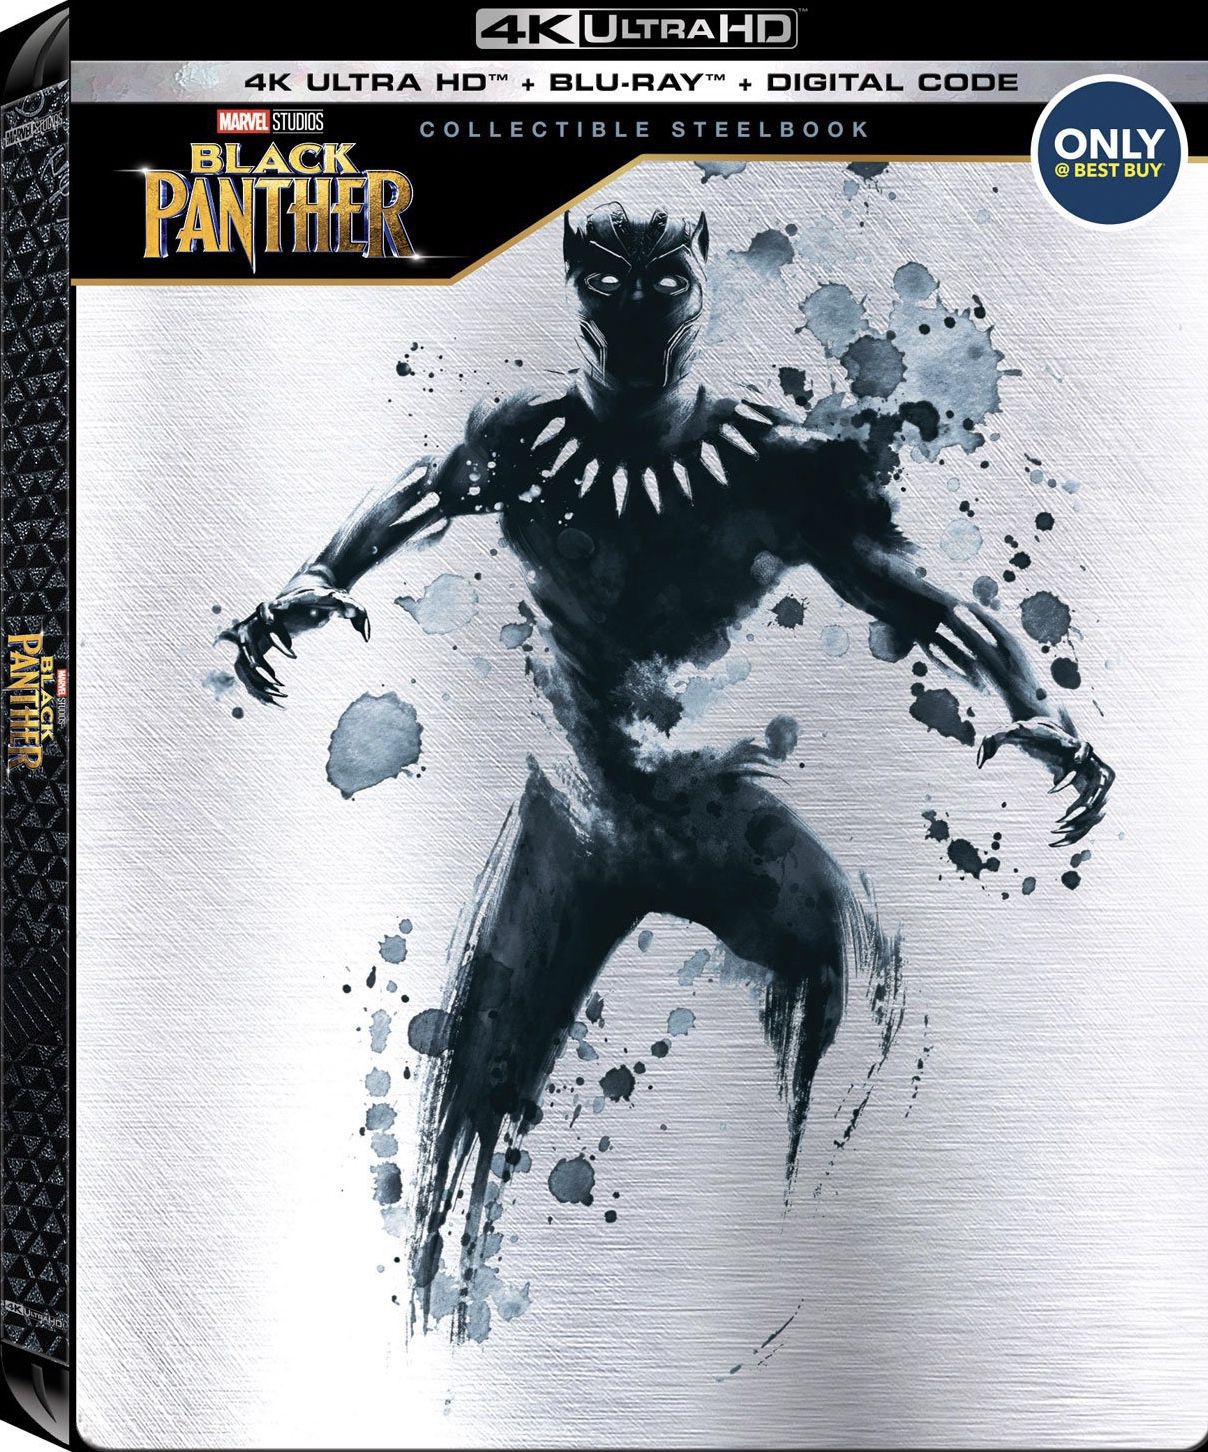 Black Panther Digital Movie